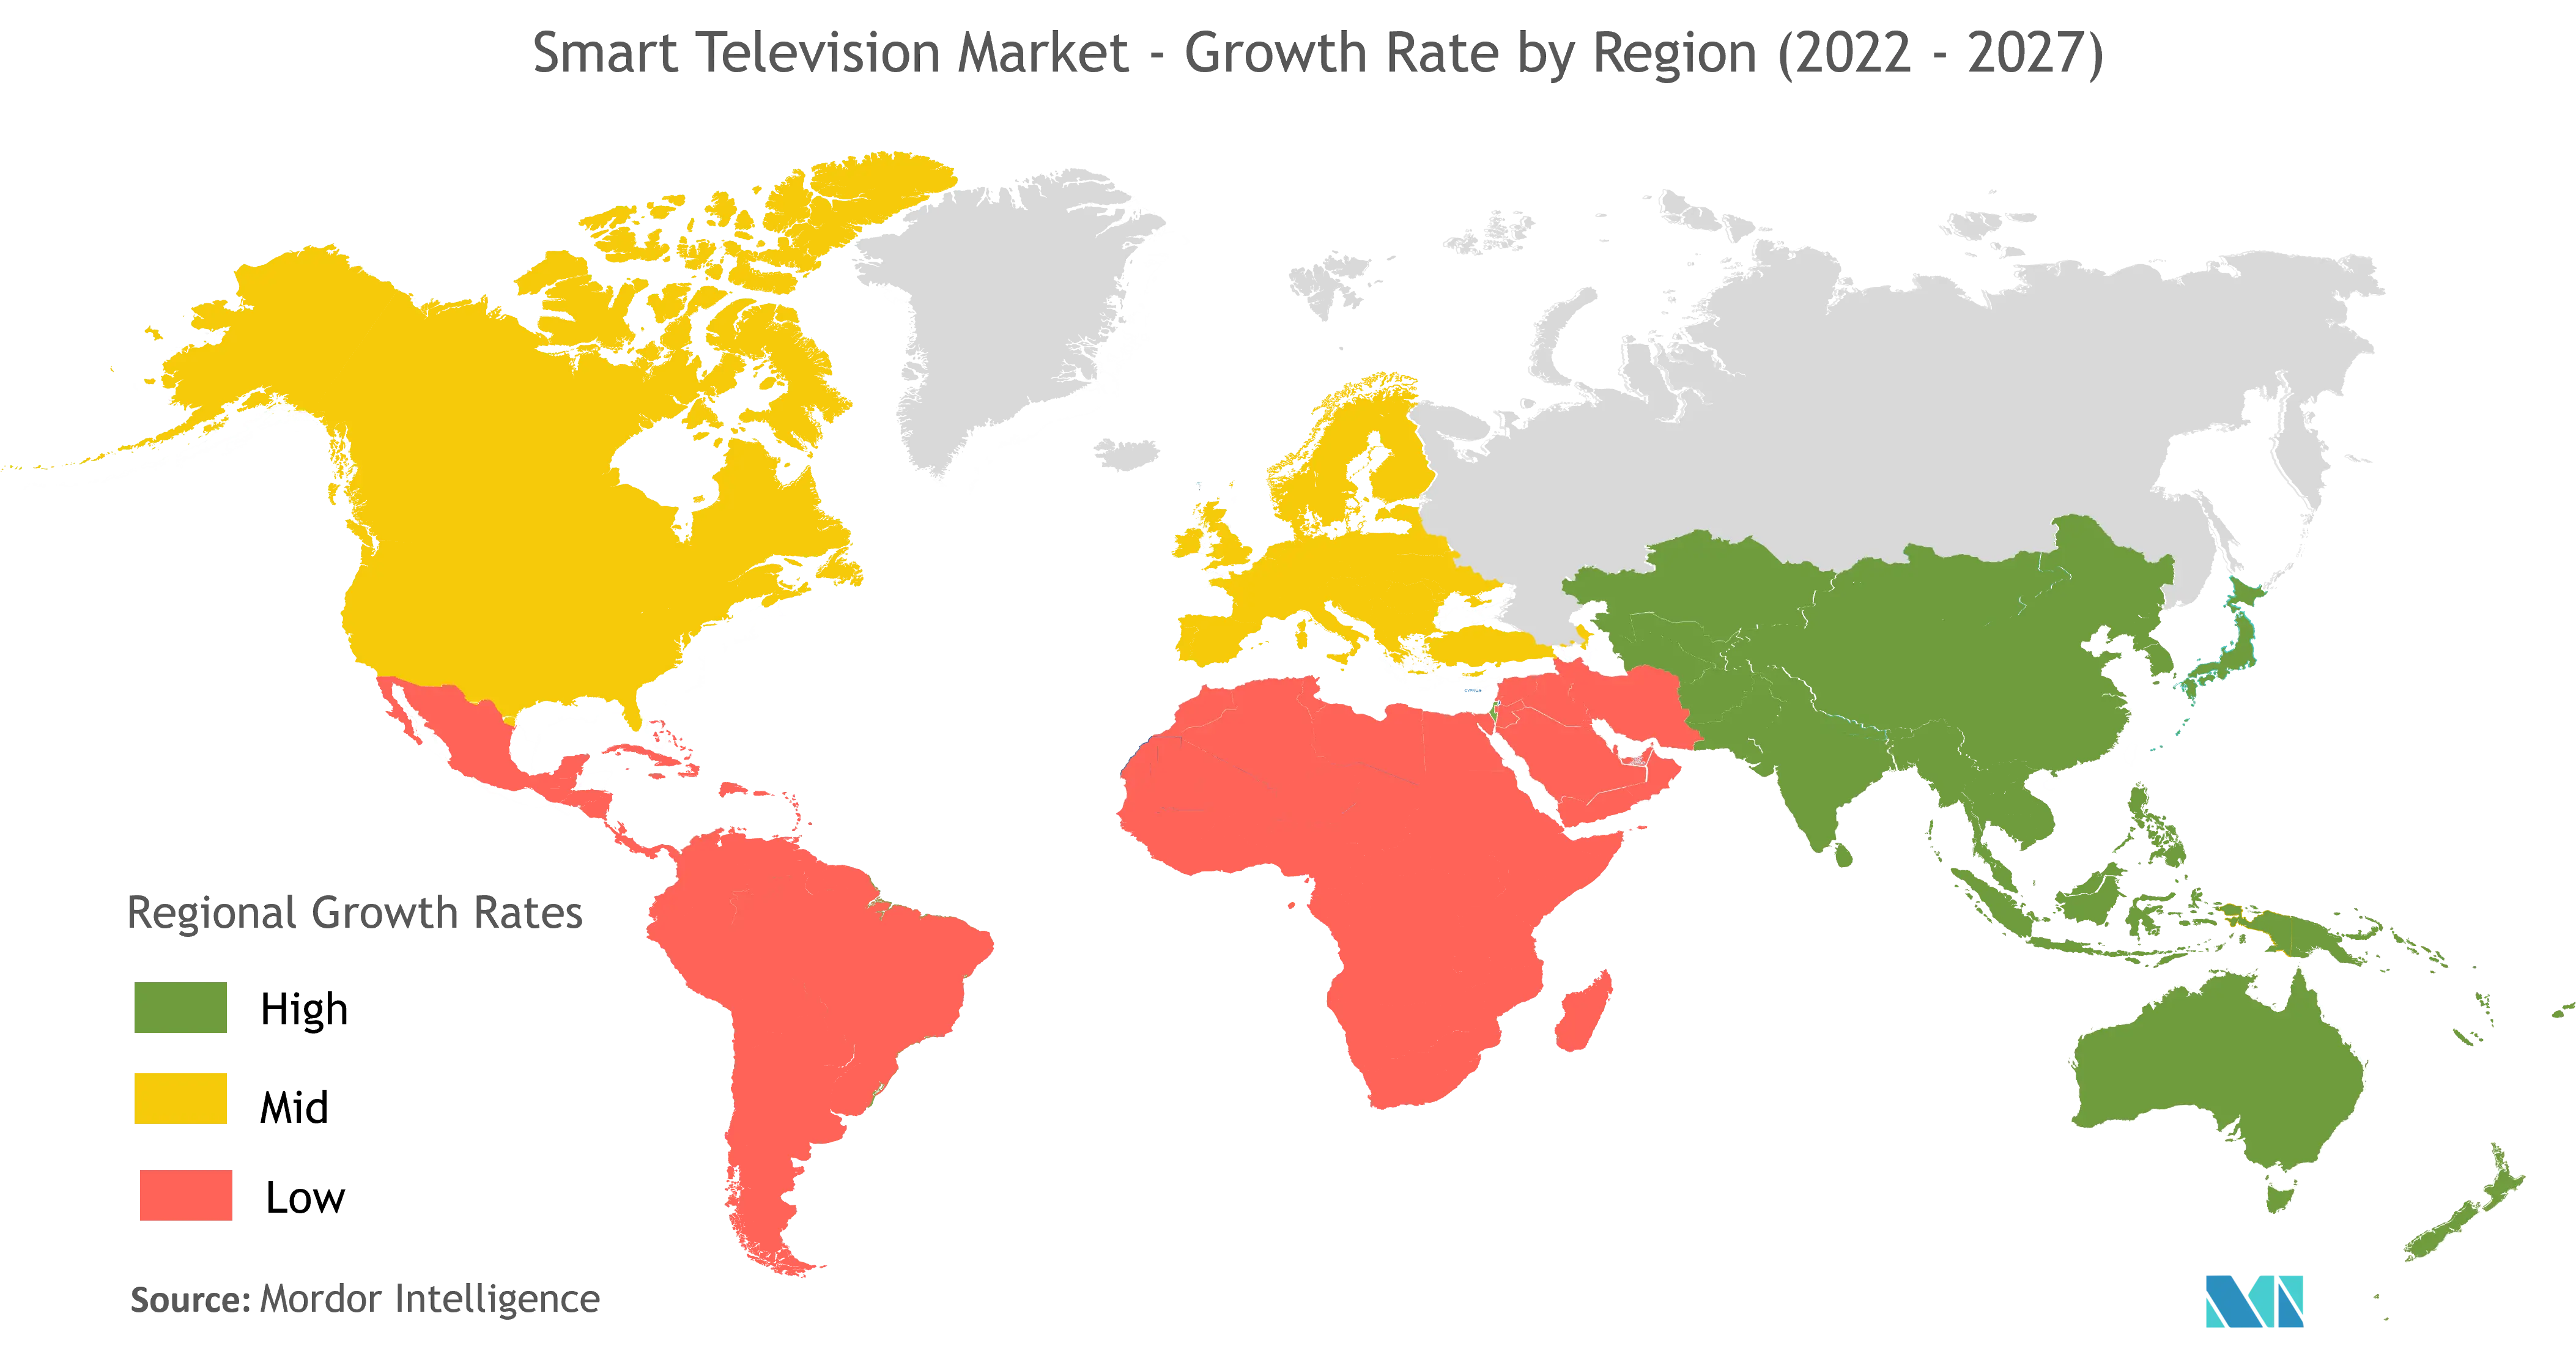 Thị trường TV thông minh - Tốc độ tăng trưởng theo khu vực (2022-2027)